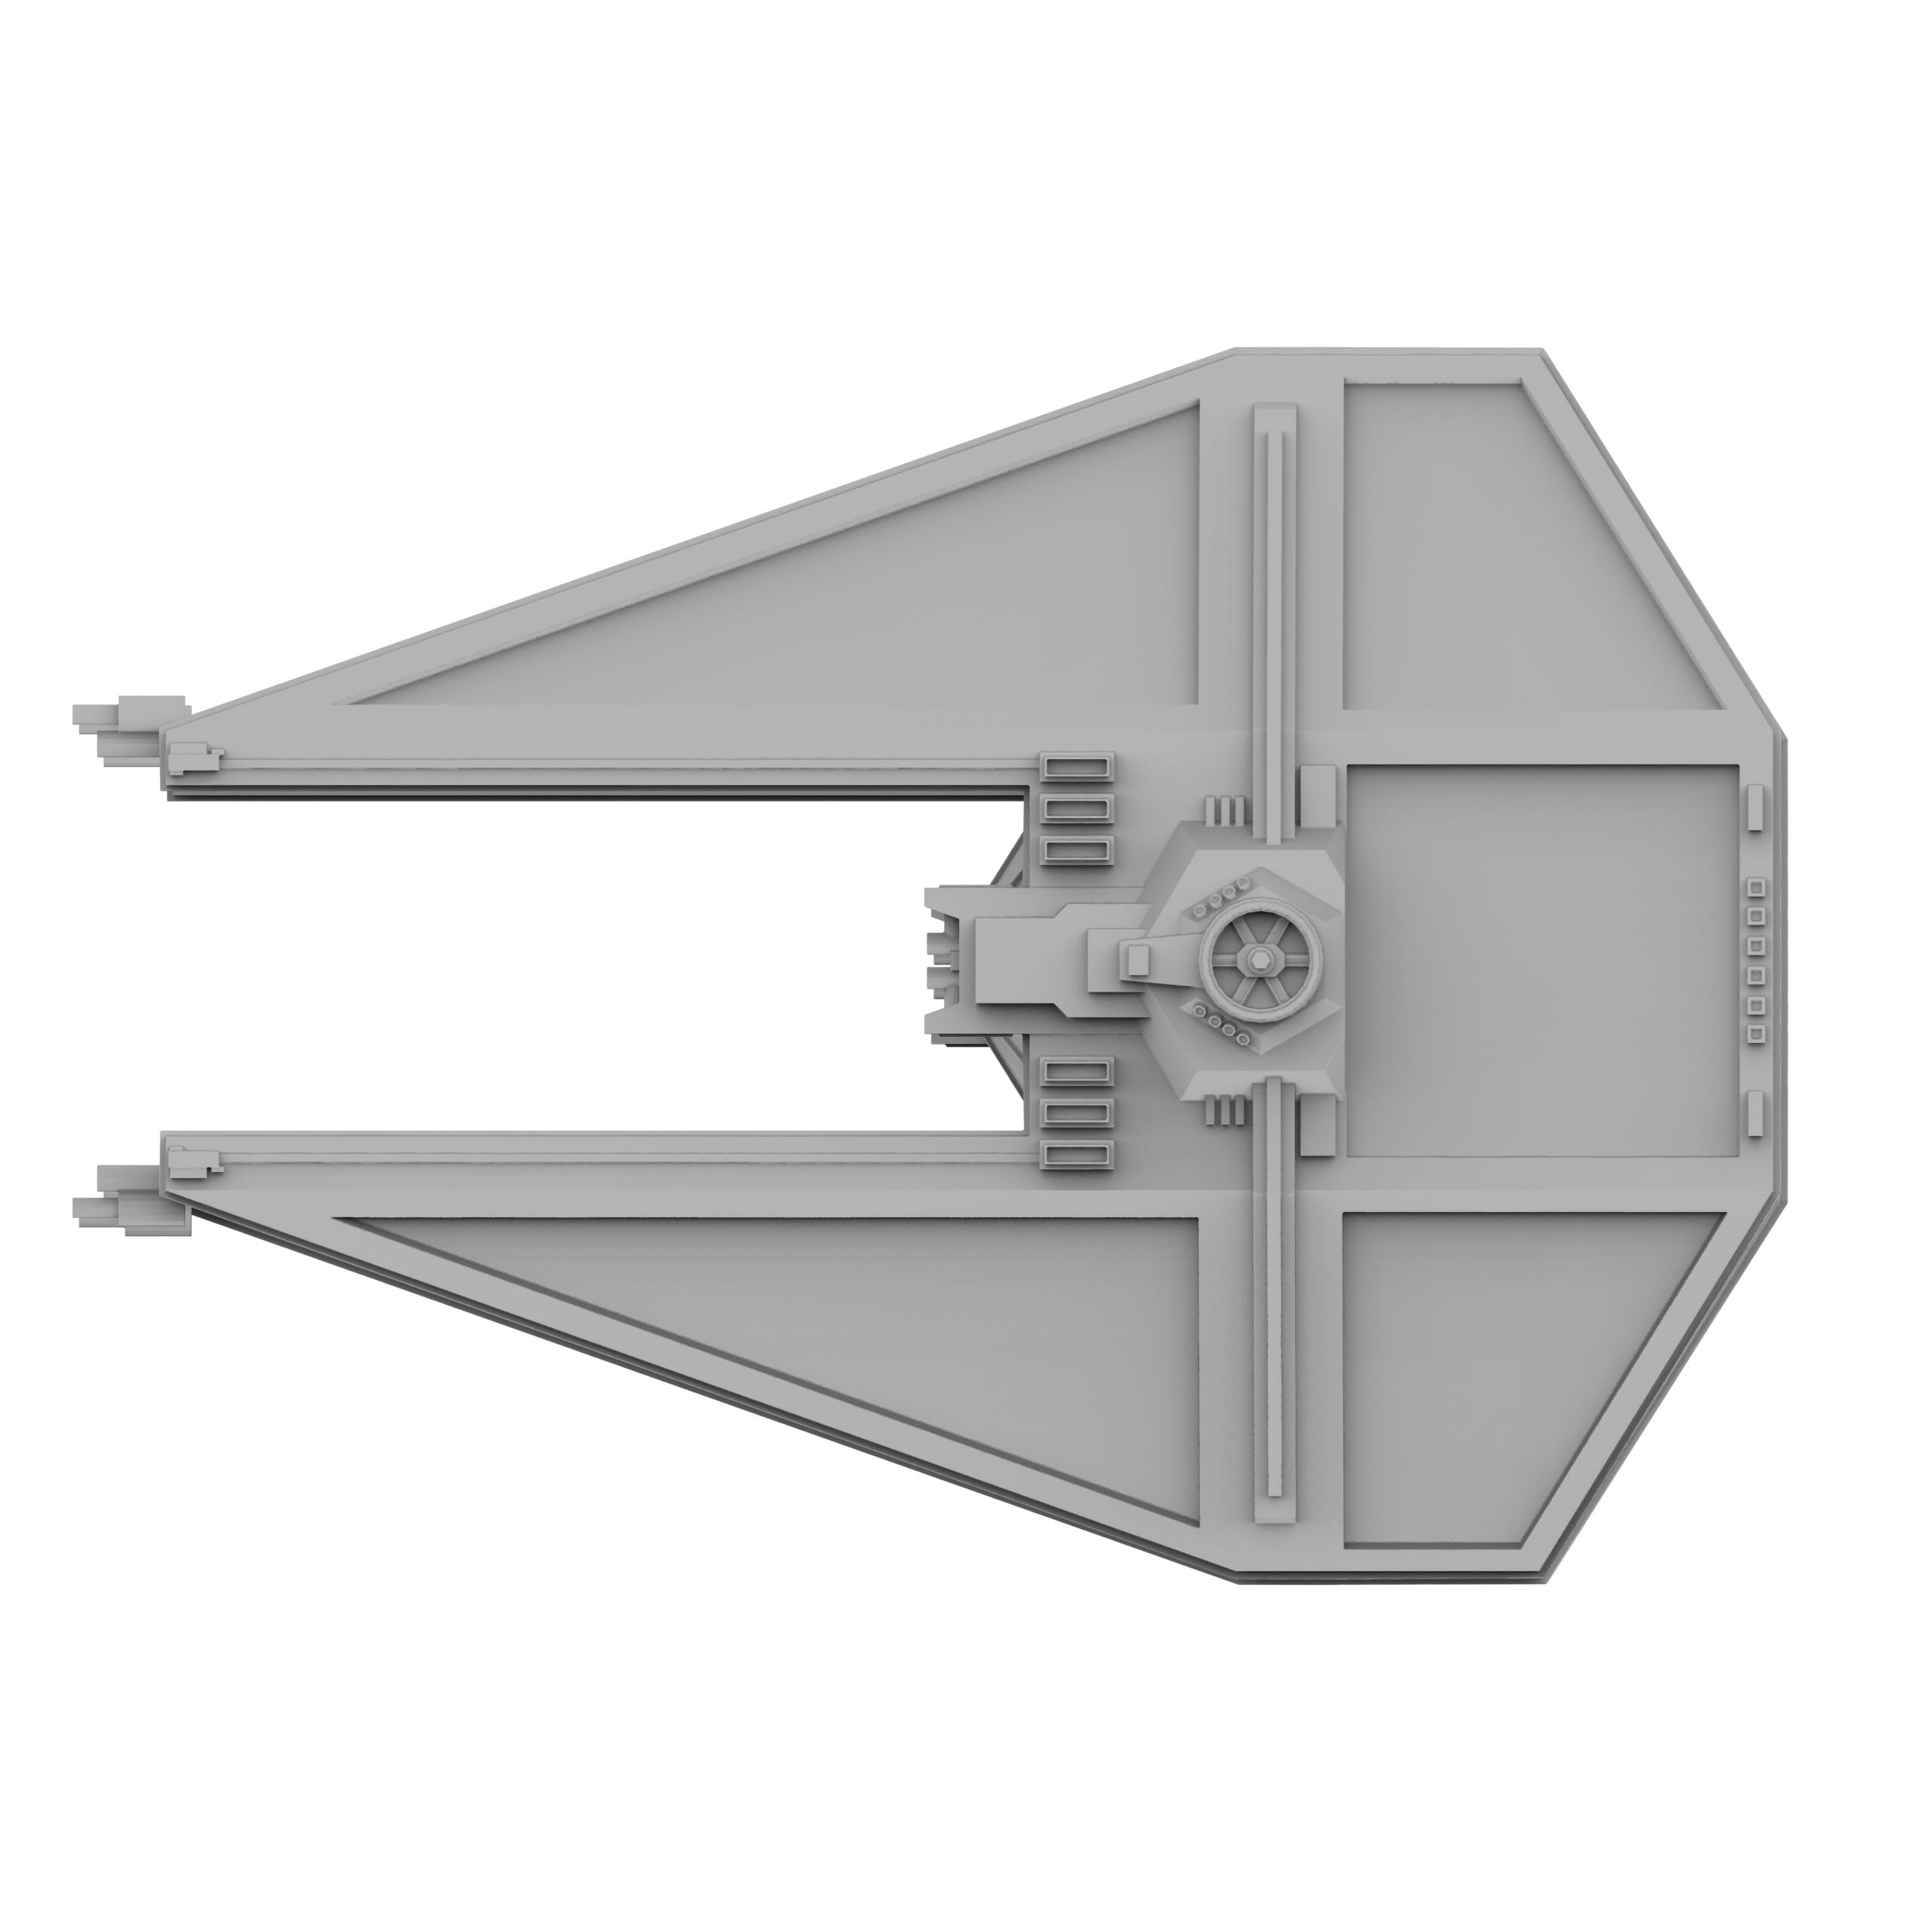 StarWars TIE Interceptor 3d model